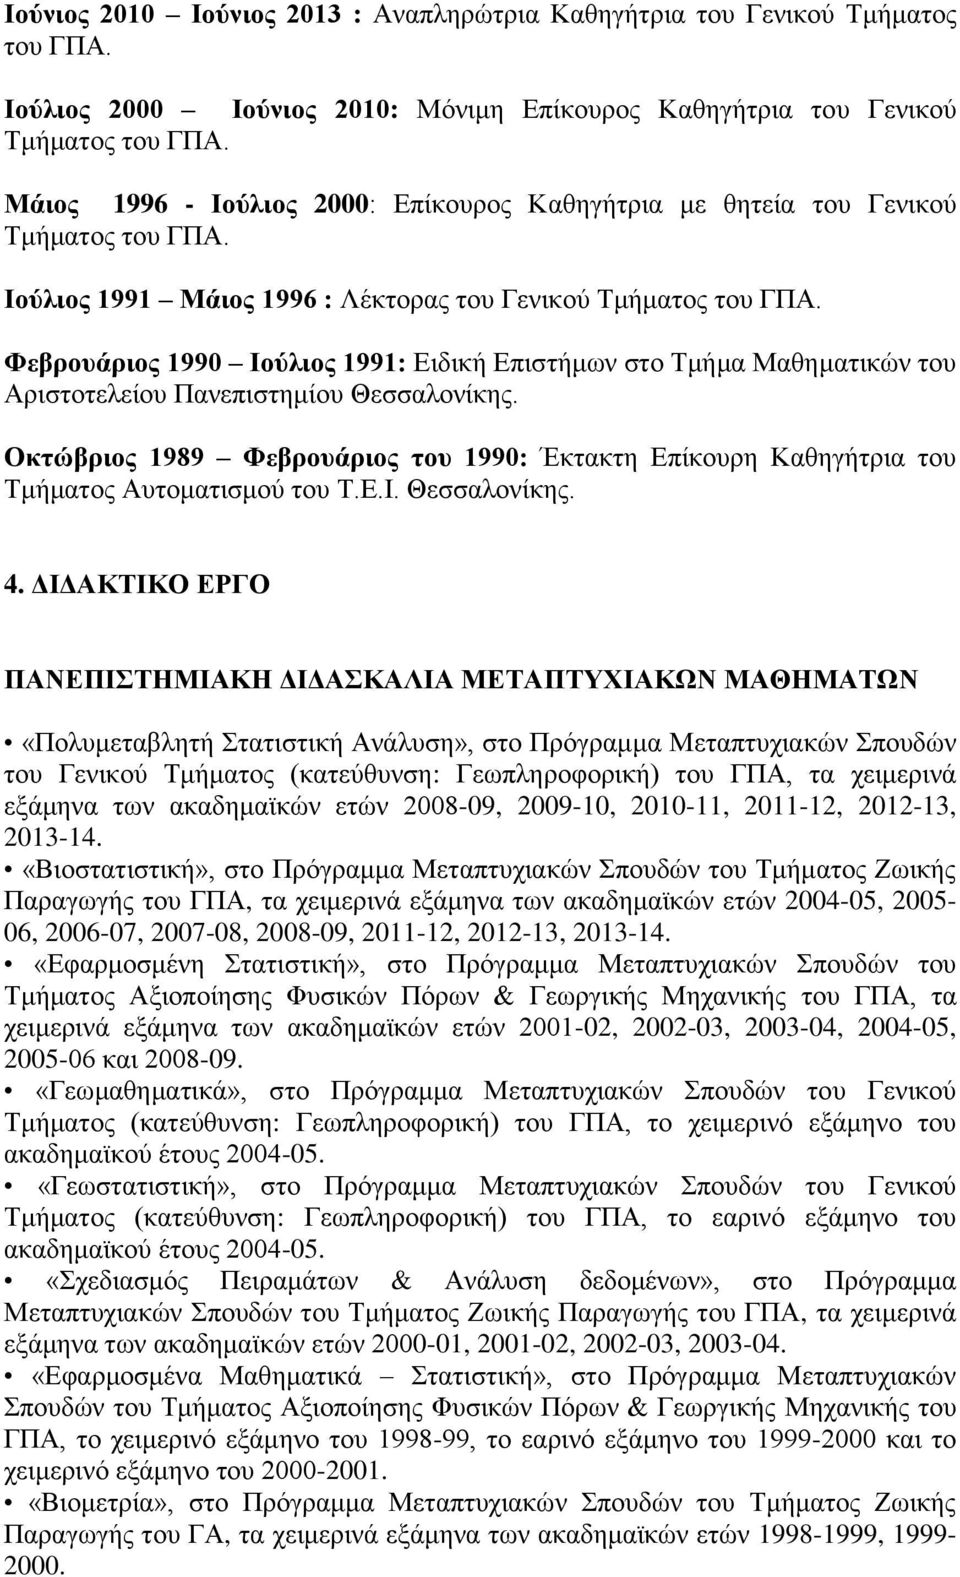 Φεβρουάριος 1990 Ιούλιος 1991: Ειδική Επιστήμων στο Τμήμα Μαθηματικών του Αριστοτελείου Πανεπιστημίου Θεσσαλονίκης.